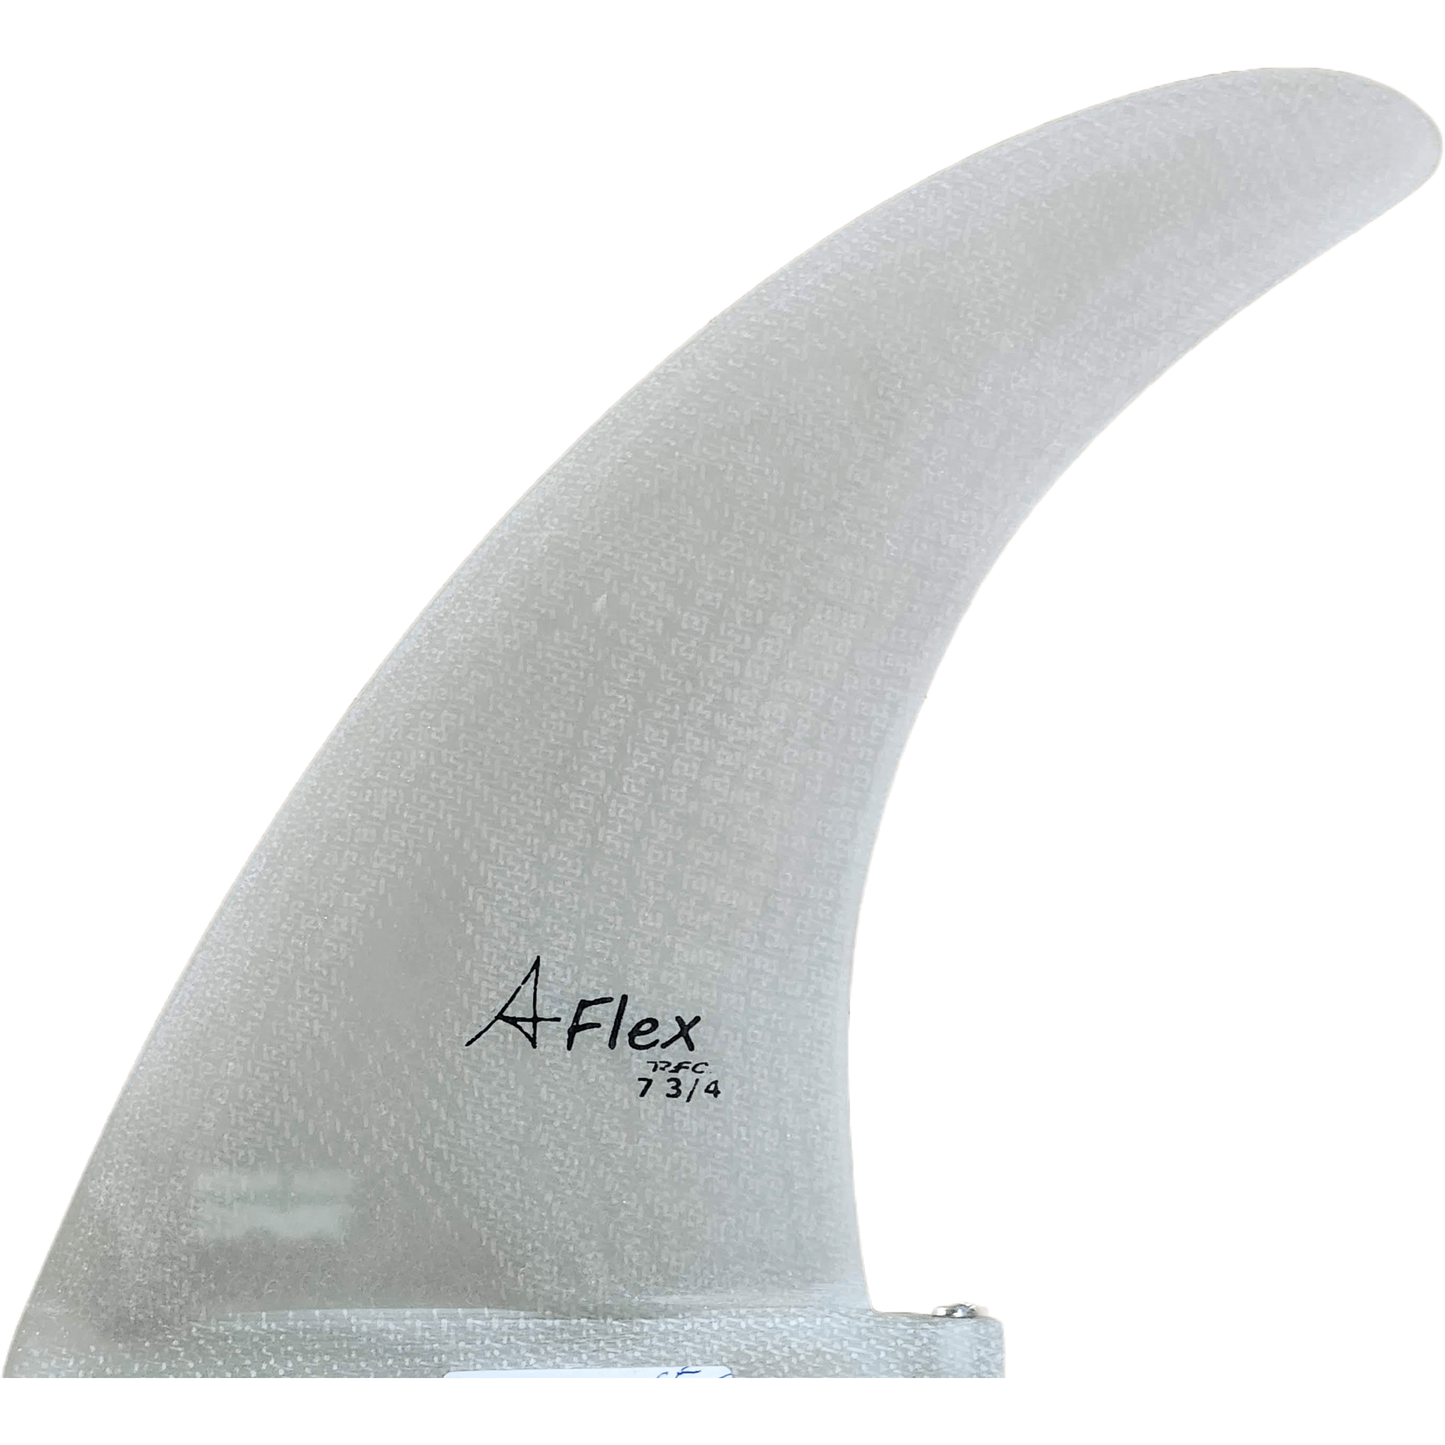 AFlex - Marc Andreini flex - Basham's Factory & Surf Shop